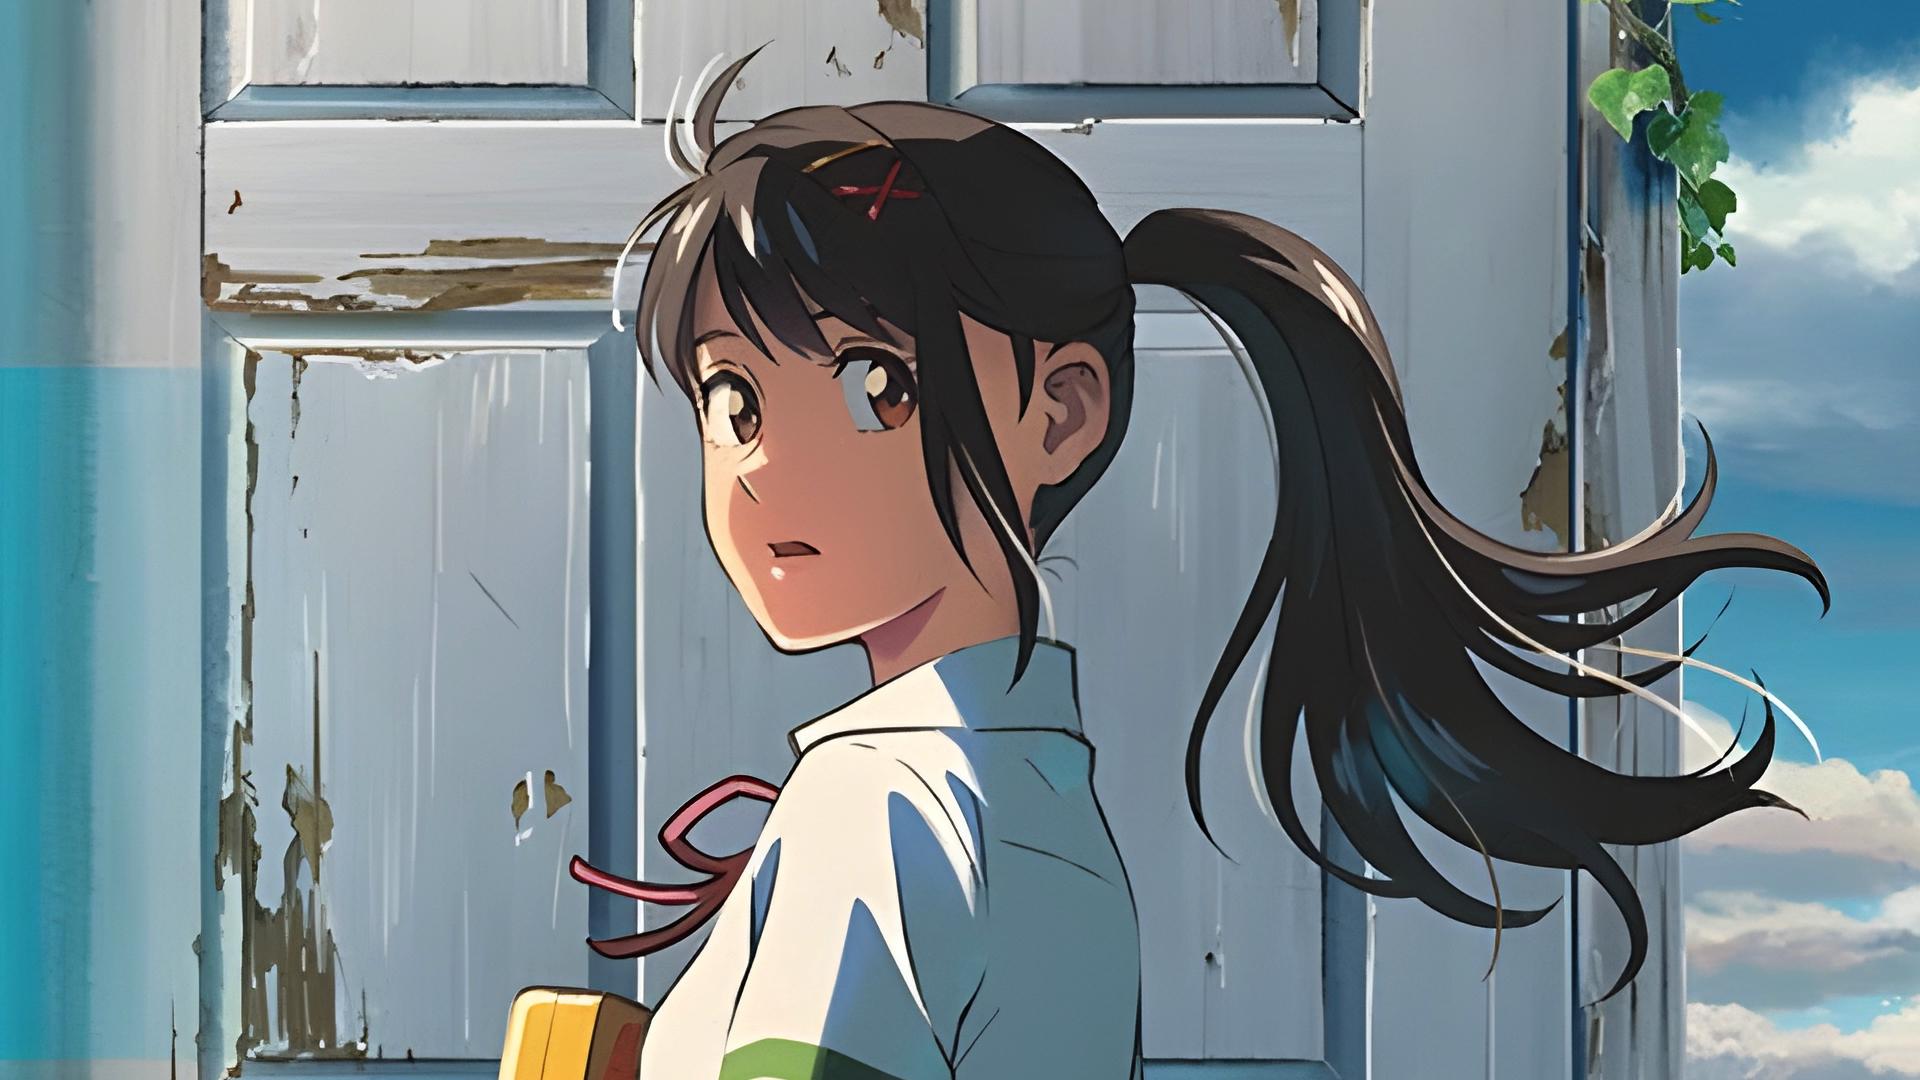 O Filme do Diretor Makoto Shinkai, Suzume no Tojimari, Divulgou seu Primeiro Trailer